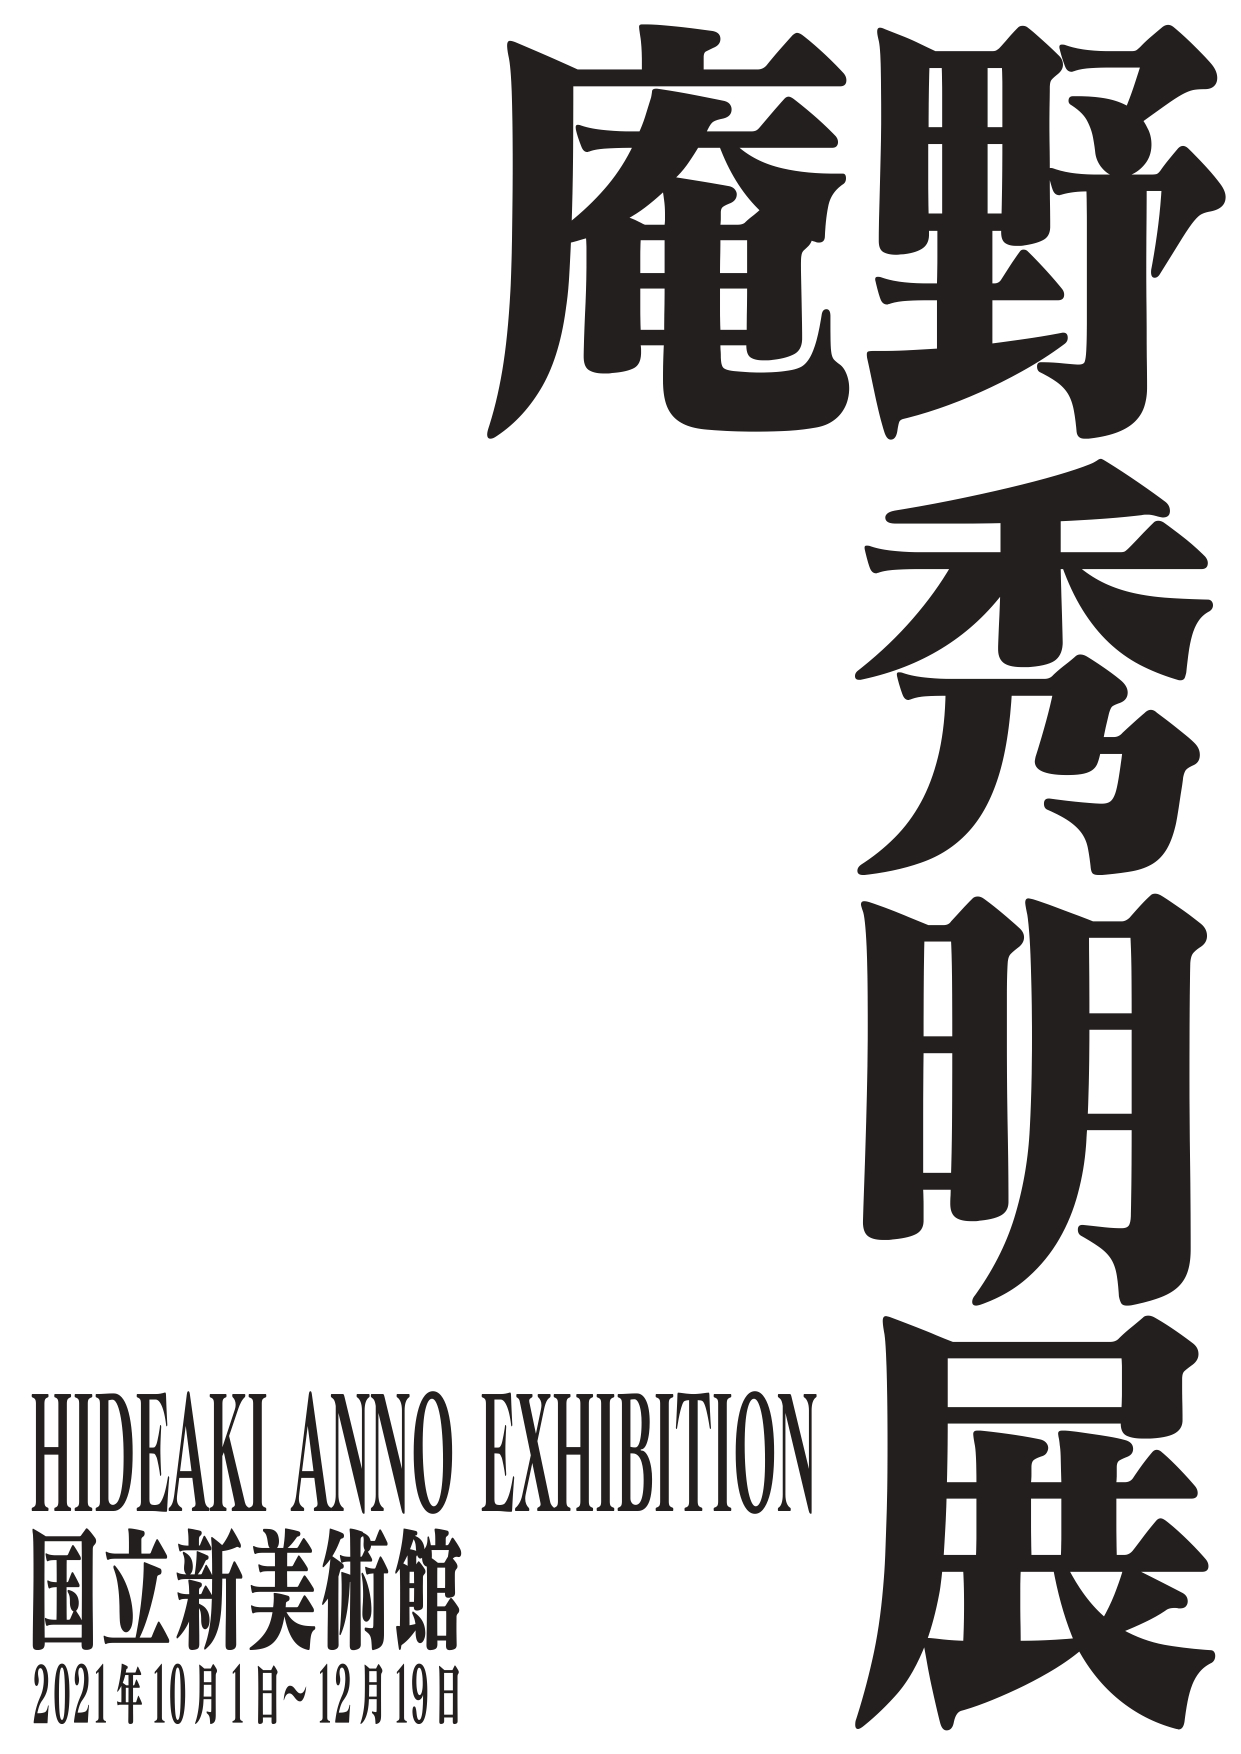 庵野作品の魅力に迫る「庵野秀明展」国立新美術館で10月1日より開催!